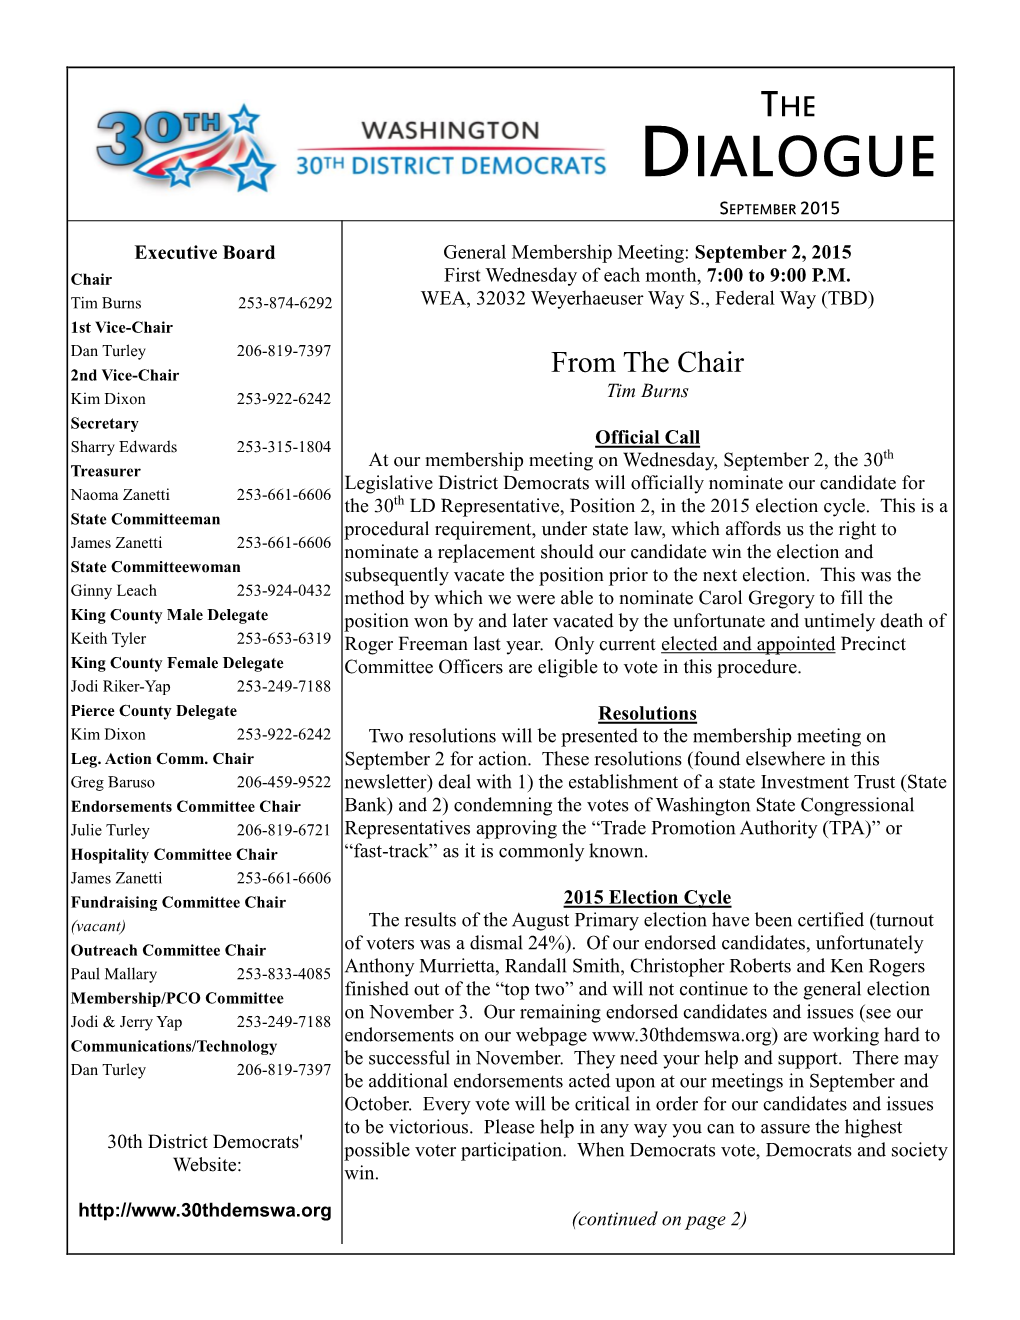 Dialogue September 2015